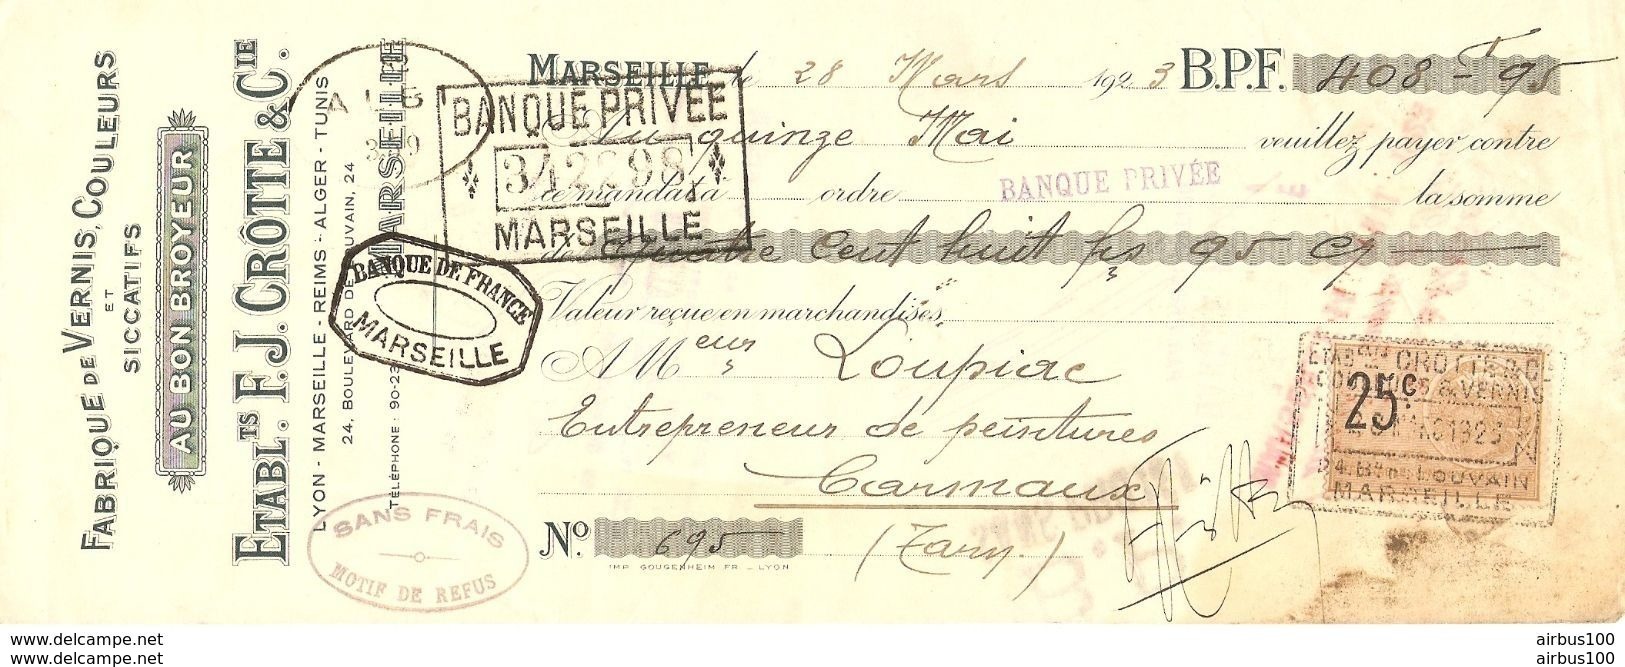 TRAITE 1923 Éts. F.J. CROTTE & Cie AU BON BROYEUR MARSEILLE - VERNIS COULEURS & SICCATIFS - LYON REIMS ALGER TUNIS - Droguerie & Parfumerie